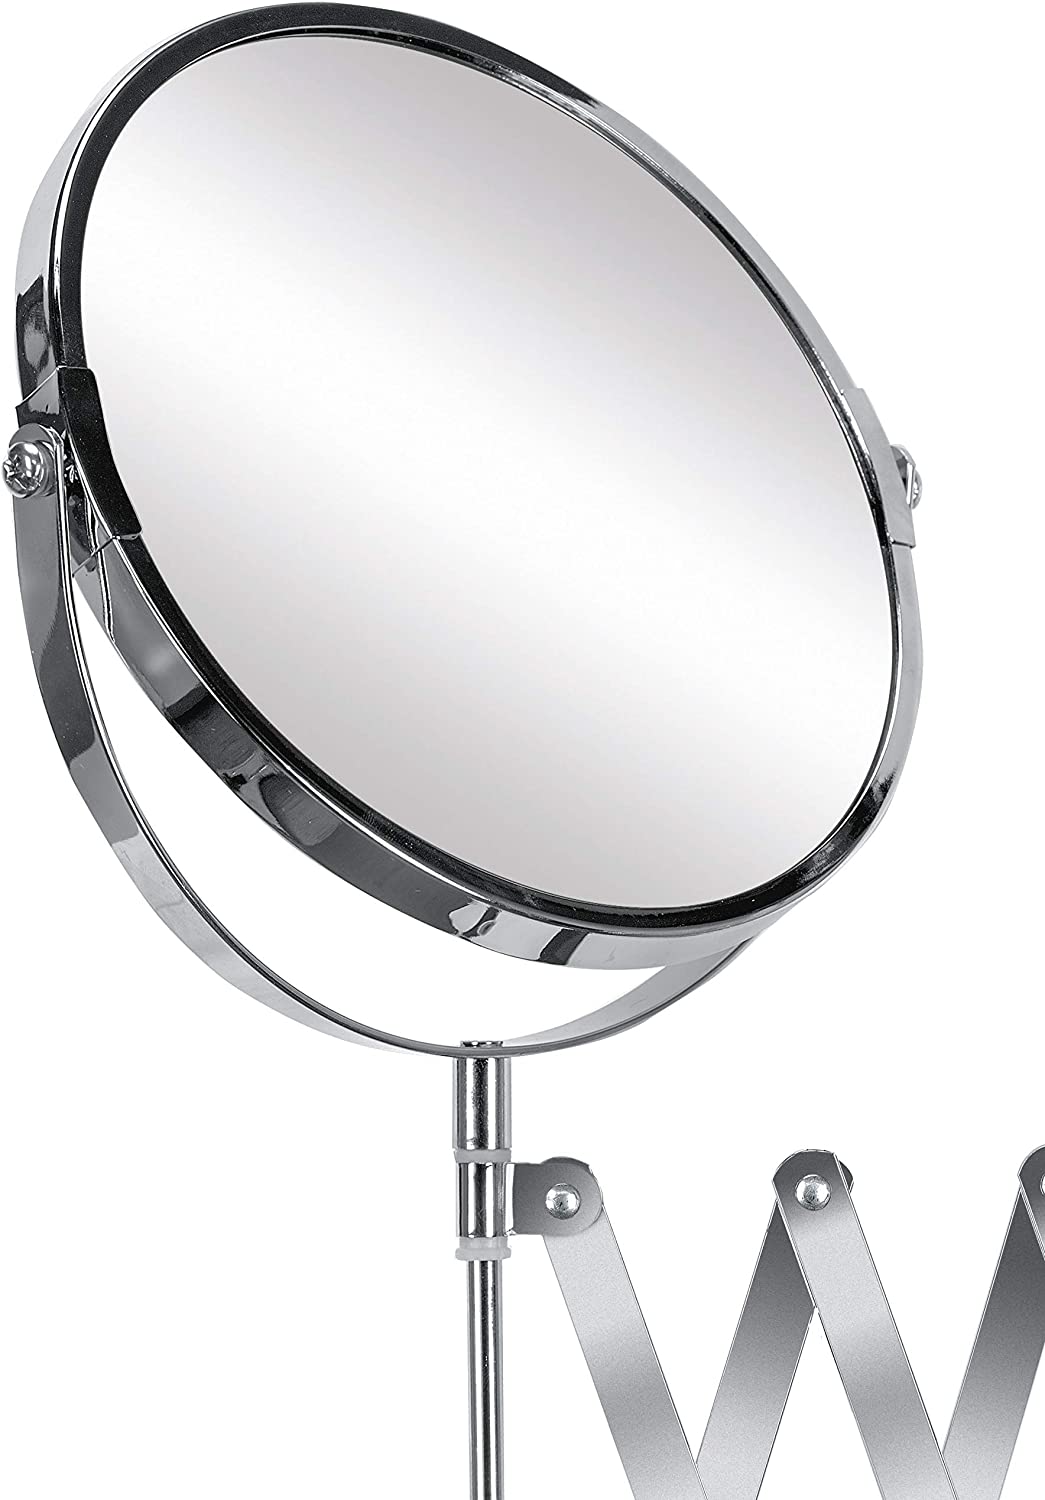 Kosmetikspiegel Move Mirror mit 5-facher Vergrößerung, Größe: 20 x 37,5 x 2 cm, Material: Metall/ Glas